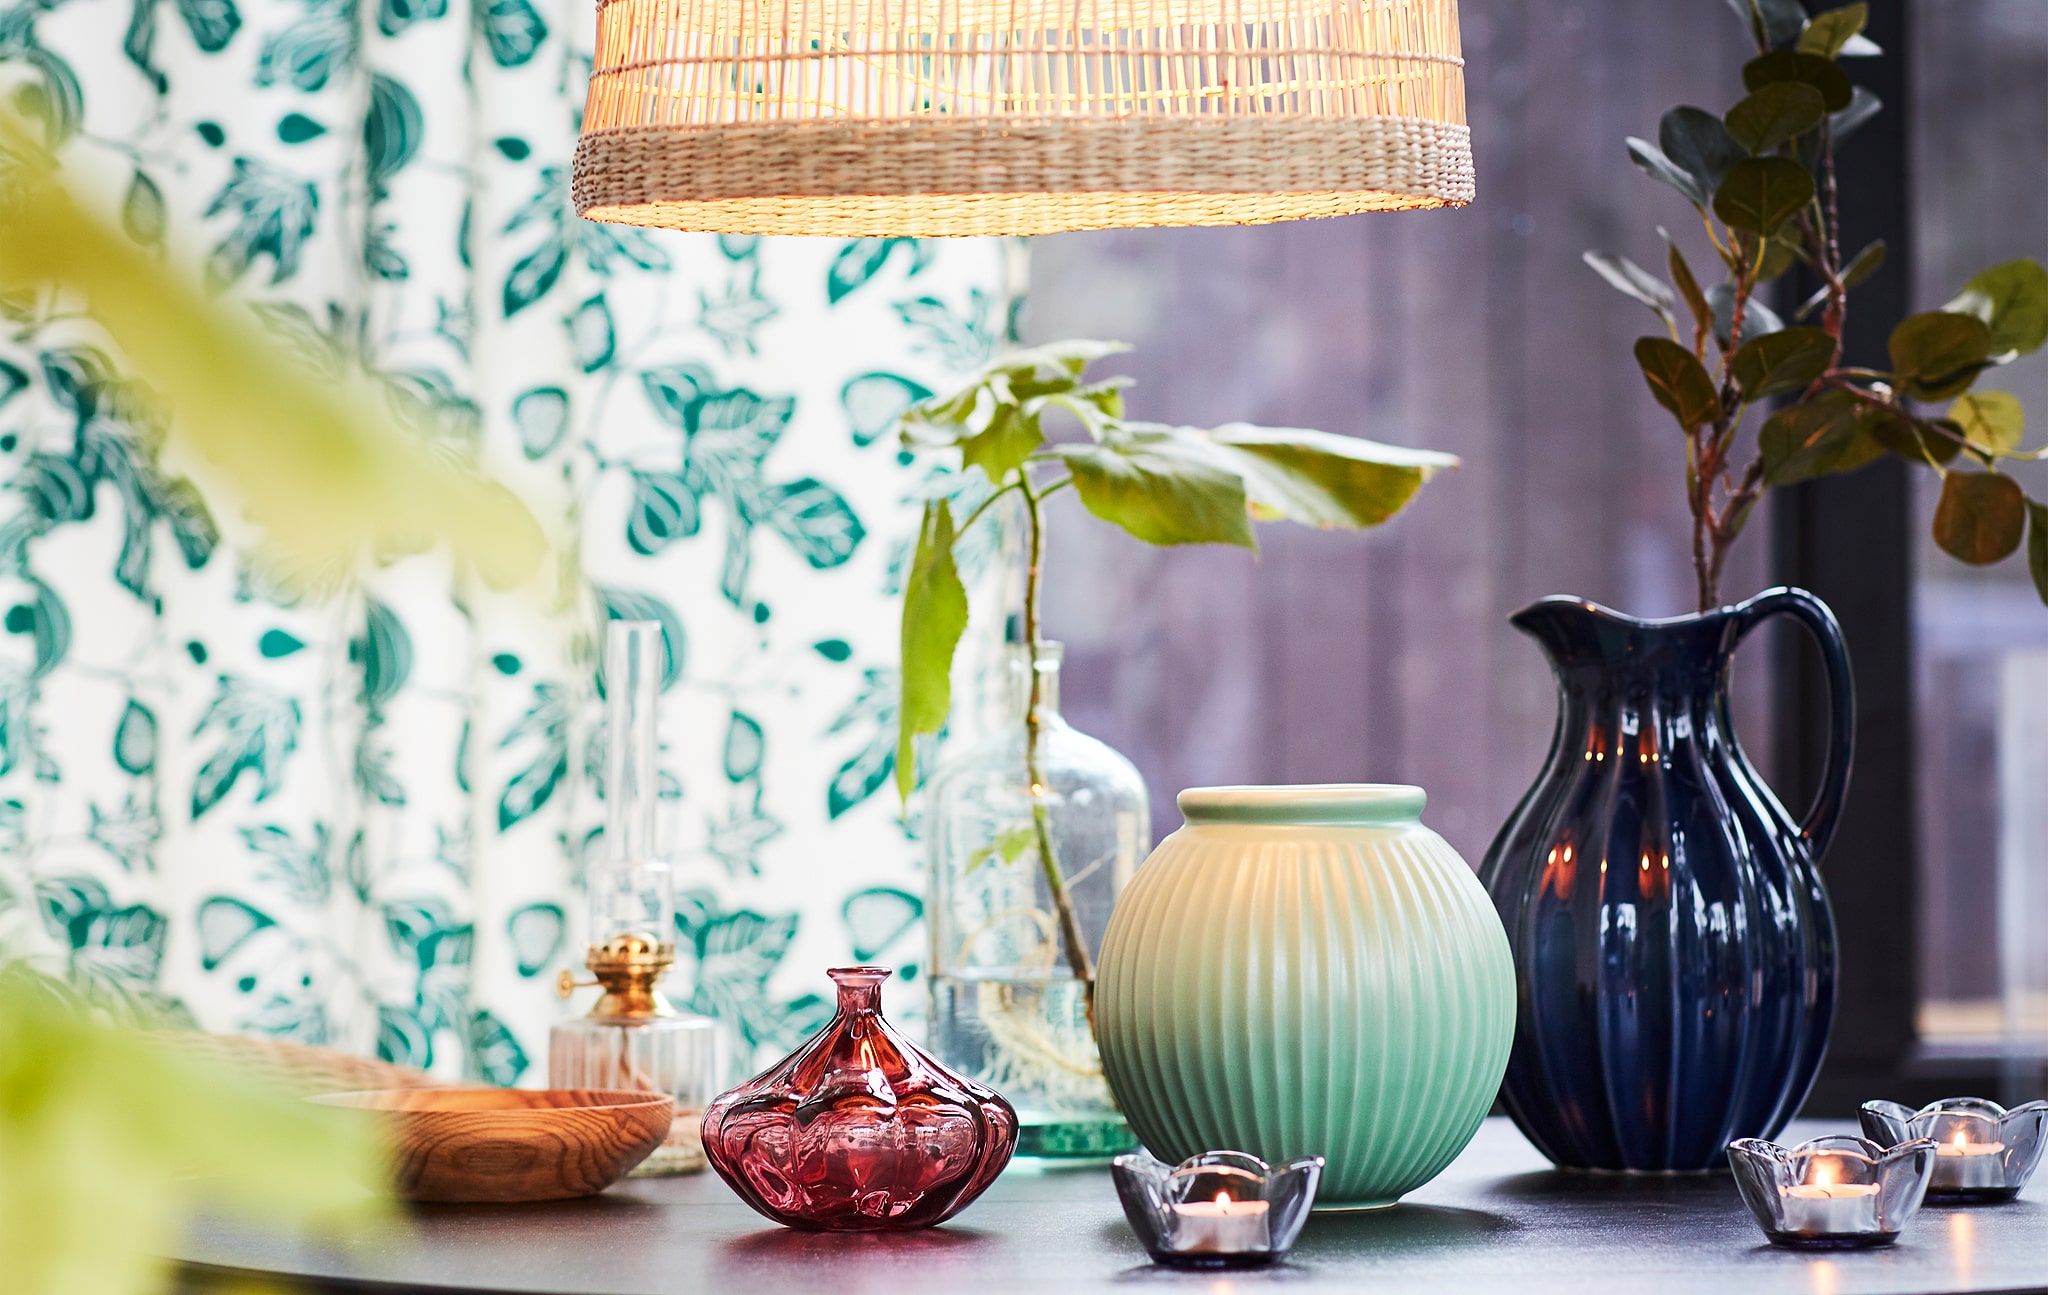 Sebuah meja yang dihiasi dengan vas kecil dan lilin dengan sedikit daun hijau dan penanda musim semi.